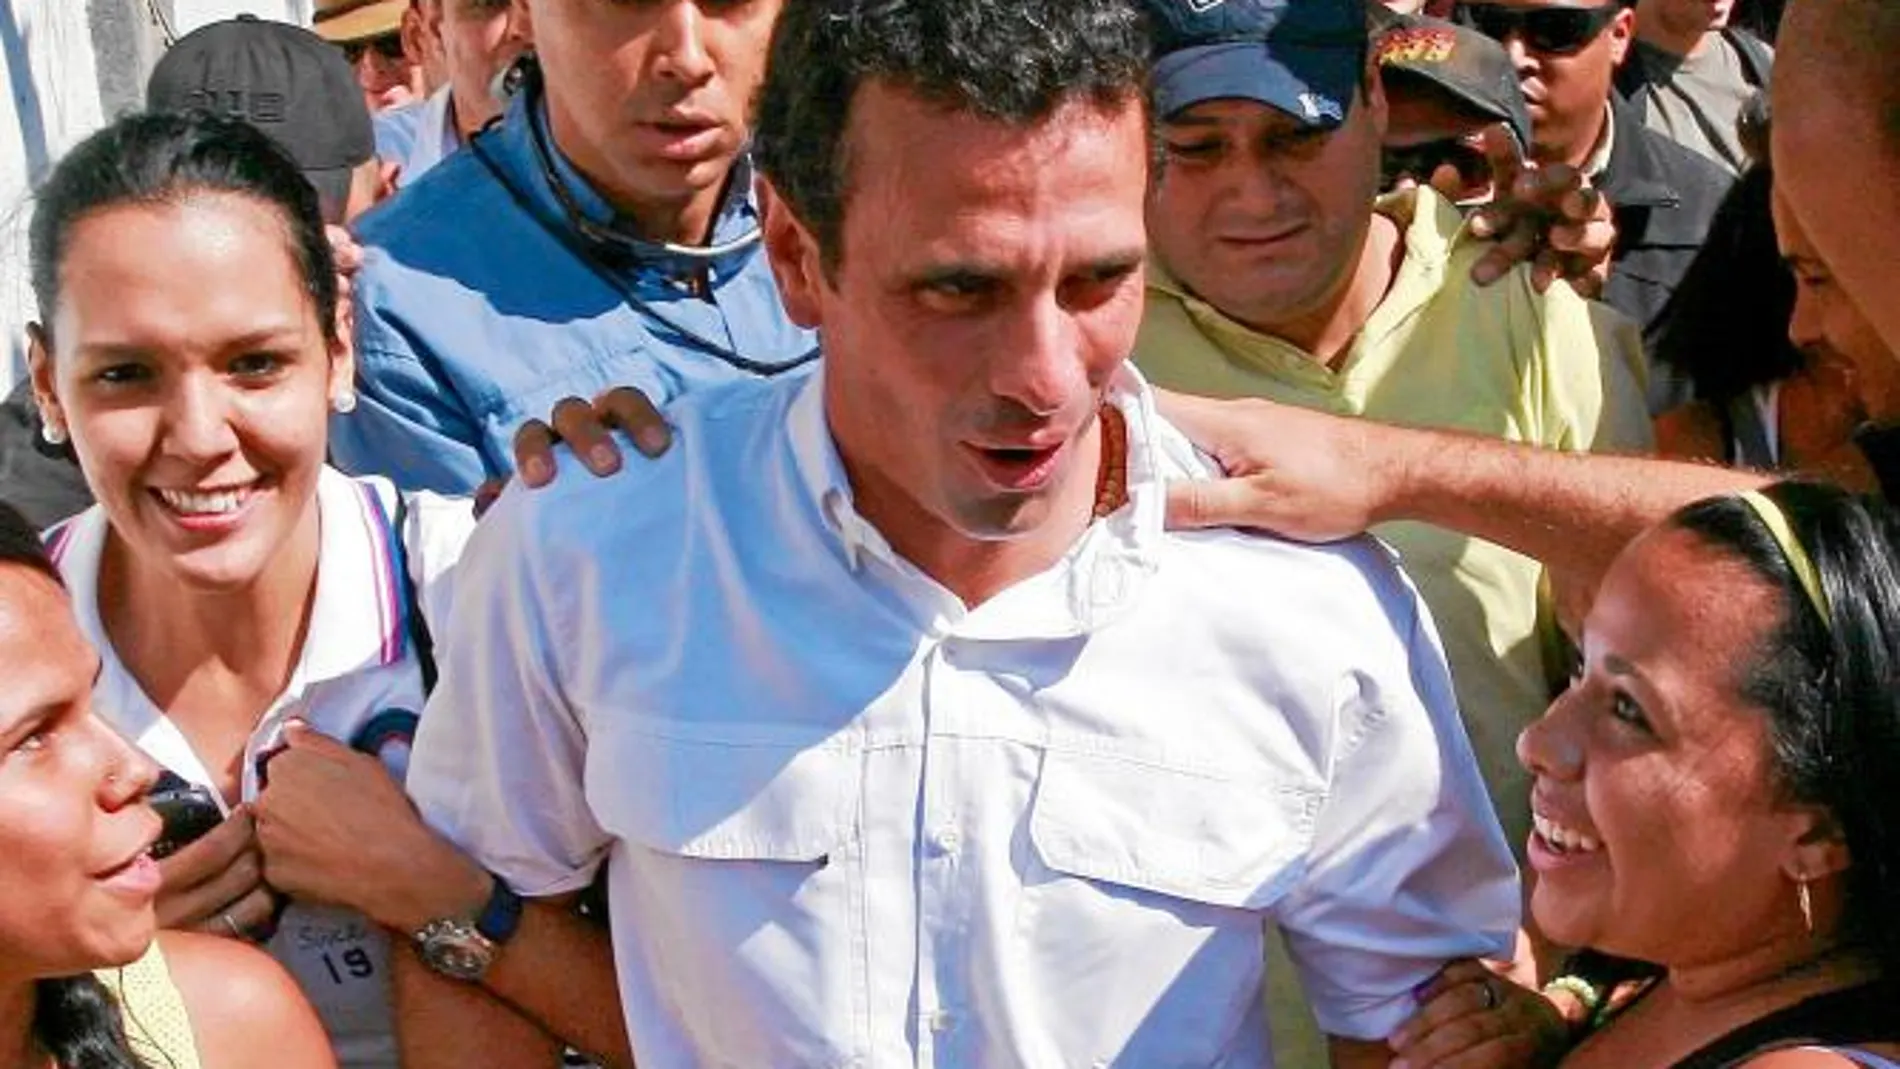 Los simpatizantes rodean al candidato opositor, Henrique Capriles, tras acudir a votar en la capital venezolana en una imagen de archivo